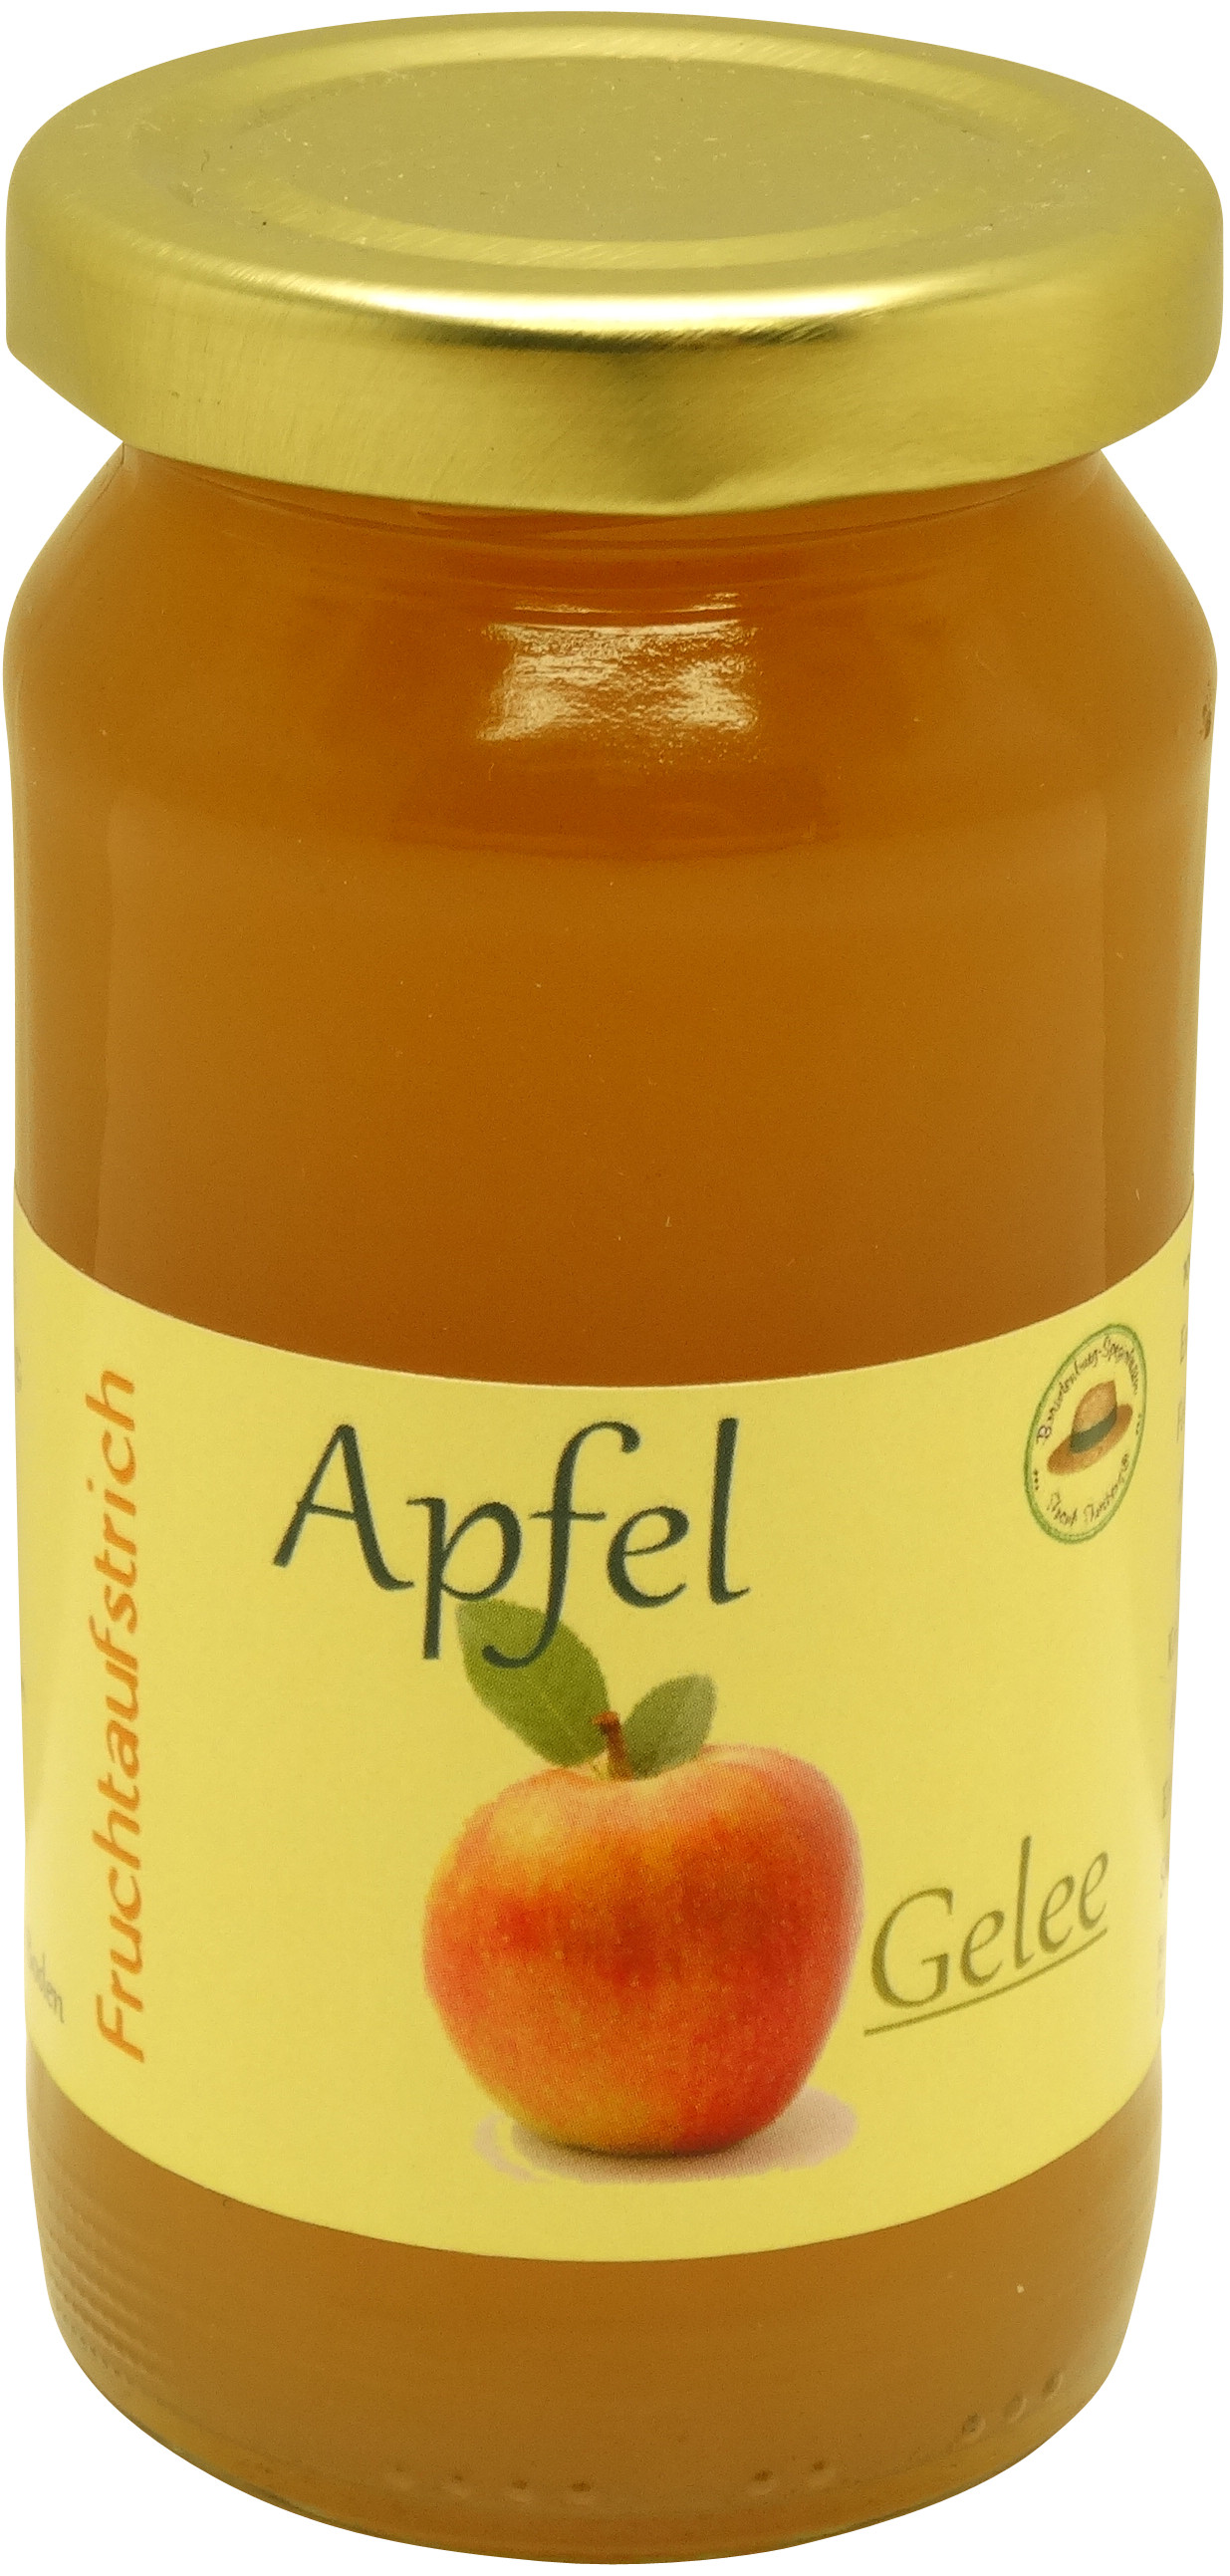 Apfelgelee | oelix.de - Öle mit Geschmack